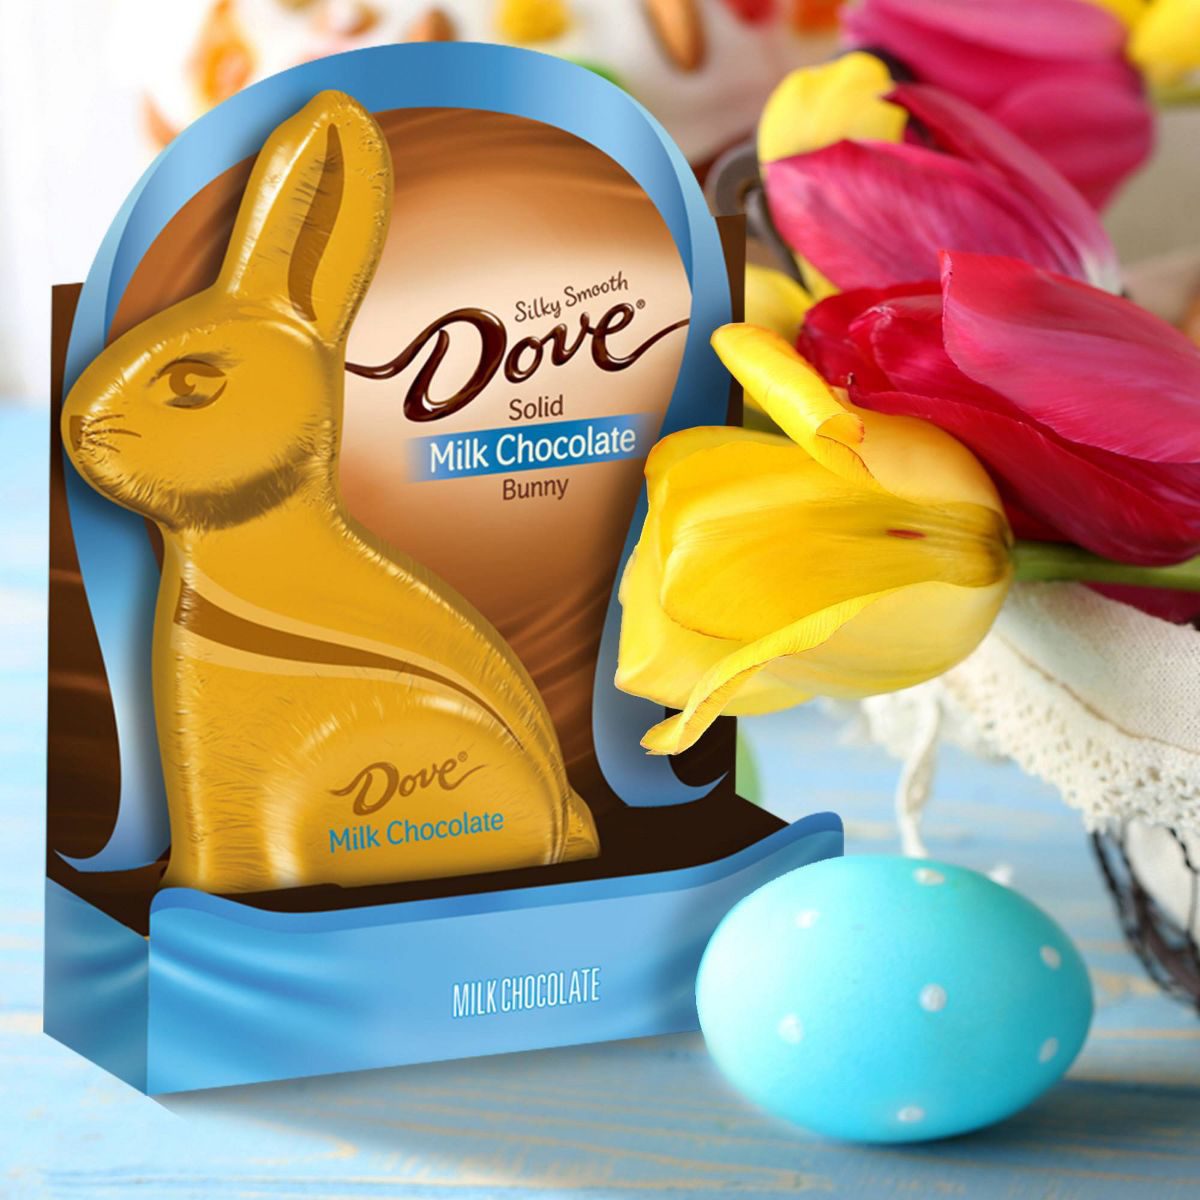 Dove Milk Chocolate Bunny